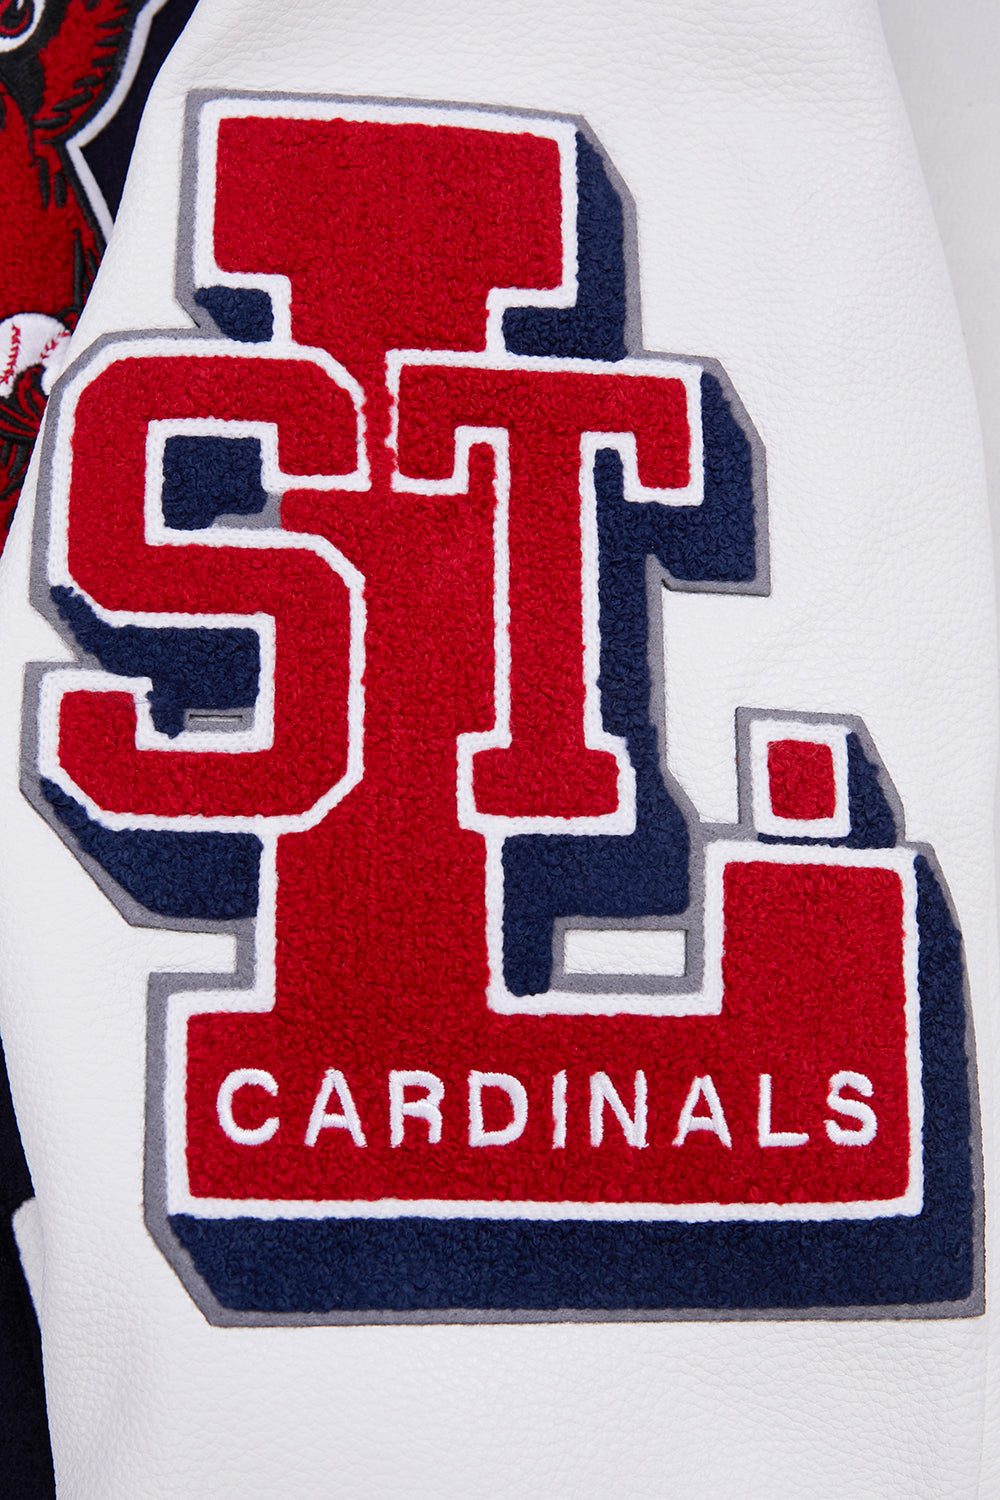 St. Louis Cardinals Black Fan Jerseys for sale